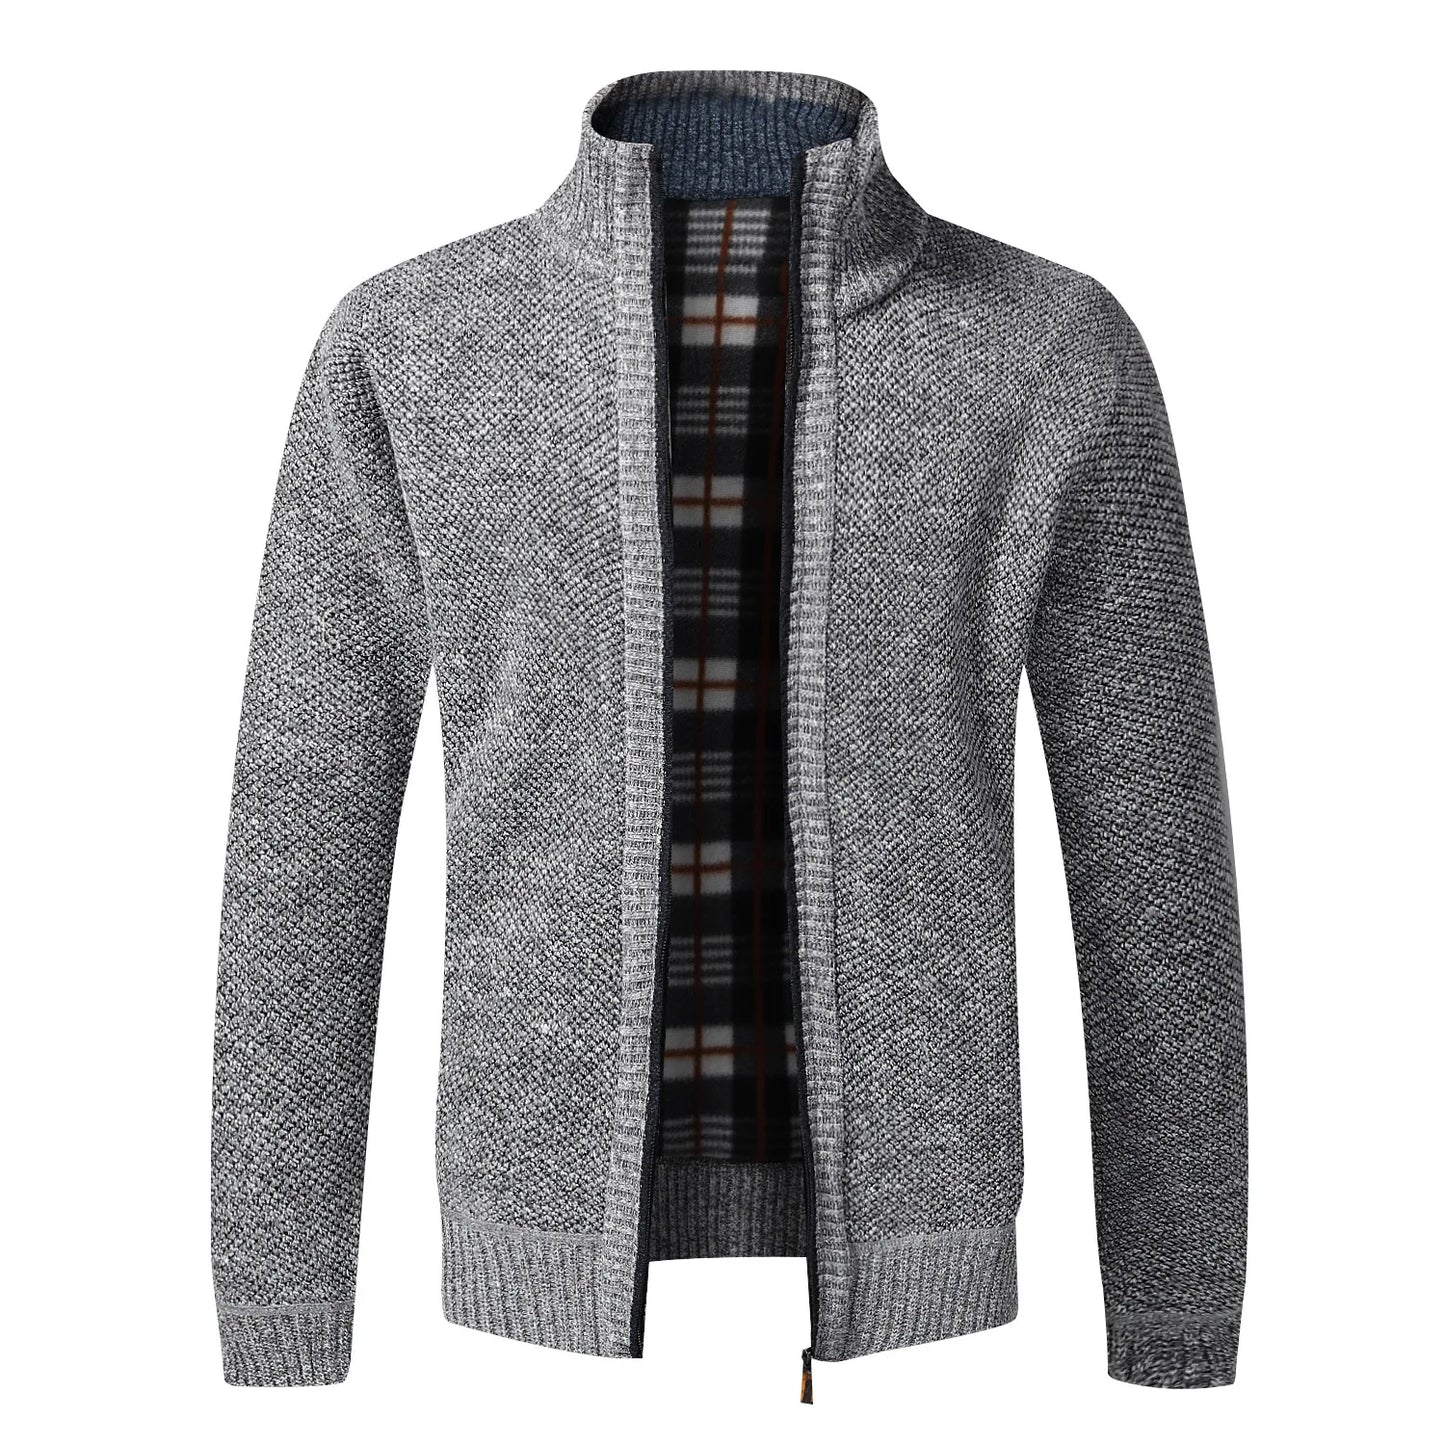 TEEK - Warm Knitted Zipper Sweater Jacket JACKET theteekdotcom light gray US XS | Tag M 